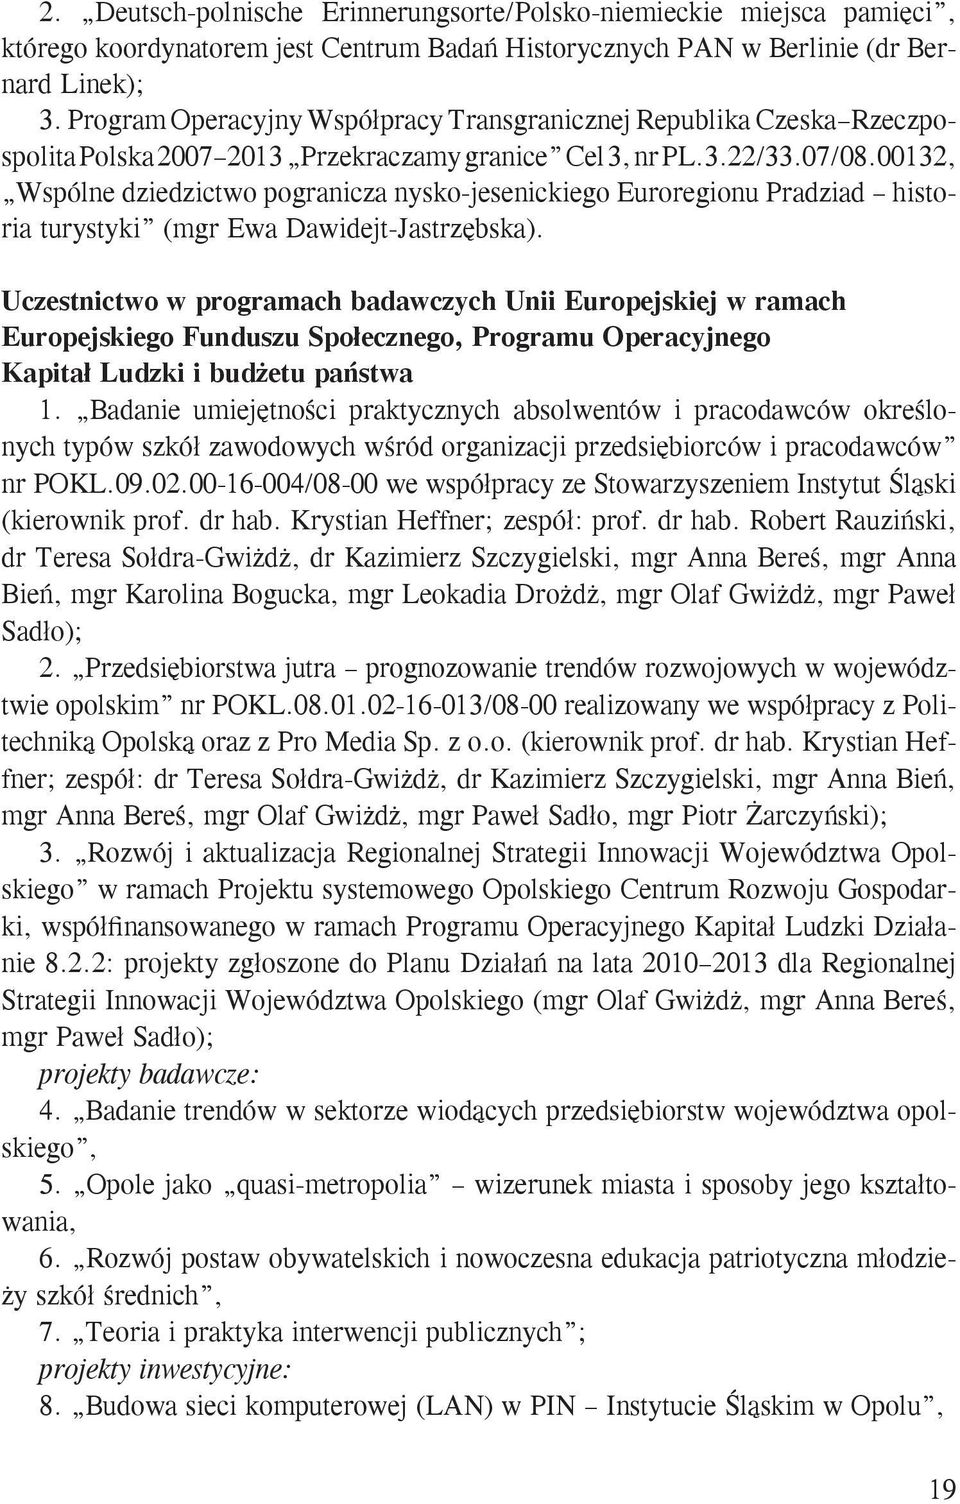 00132, Wspólne dziedzictwo pogranicza nysko-jesenickiego Euroregionu Pradziad historia turystyki (mgr Ewa Dawidejt-Jastrzębska).